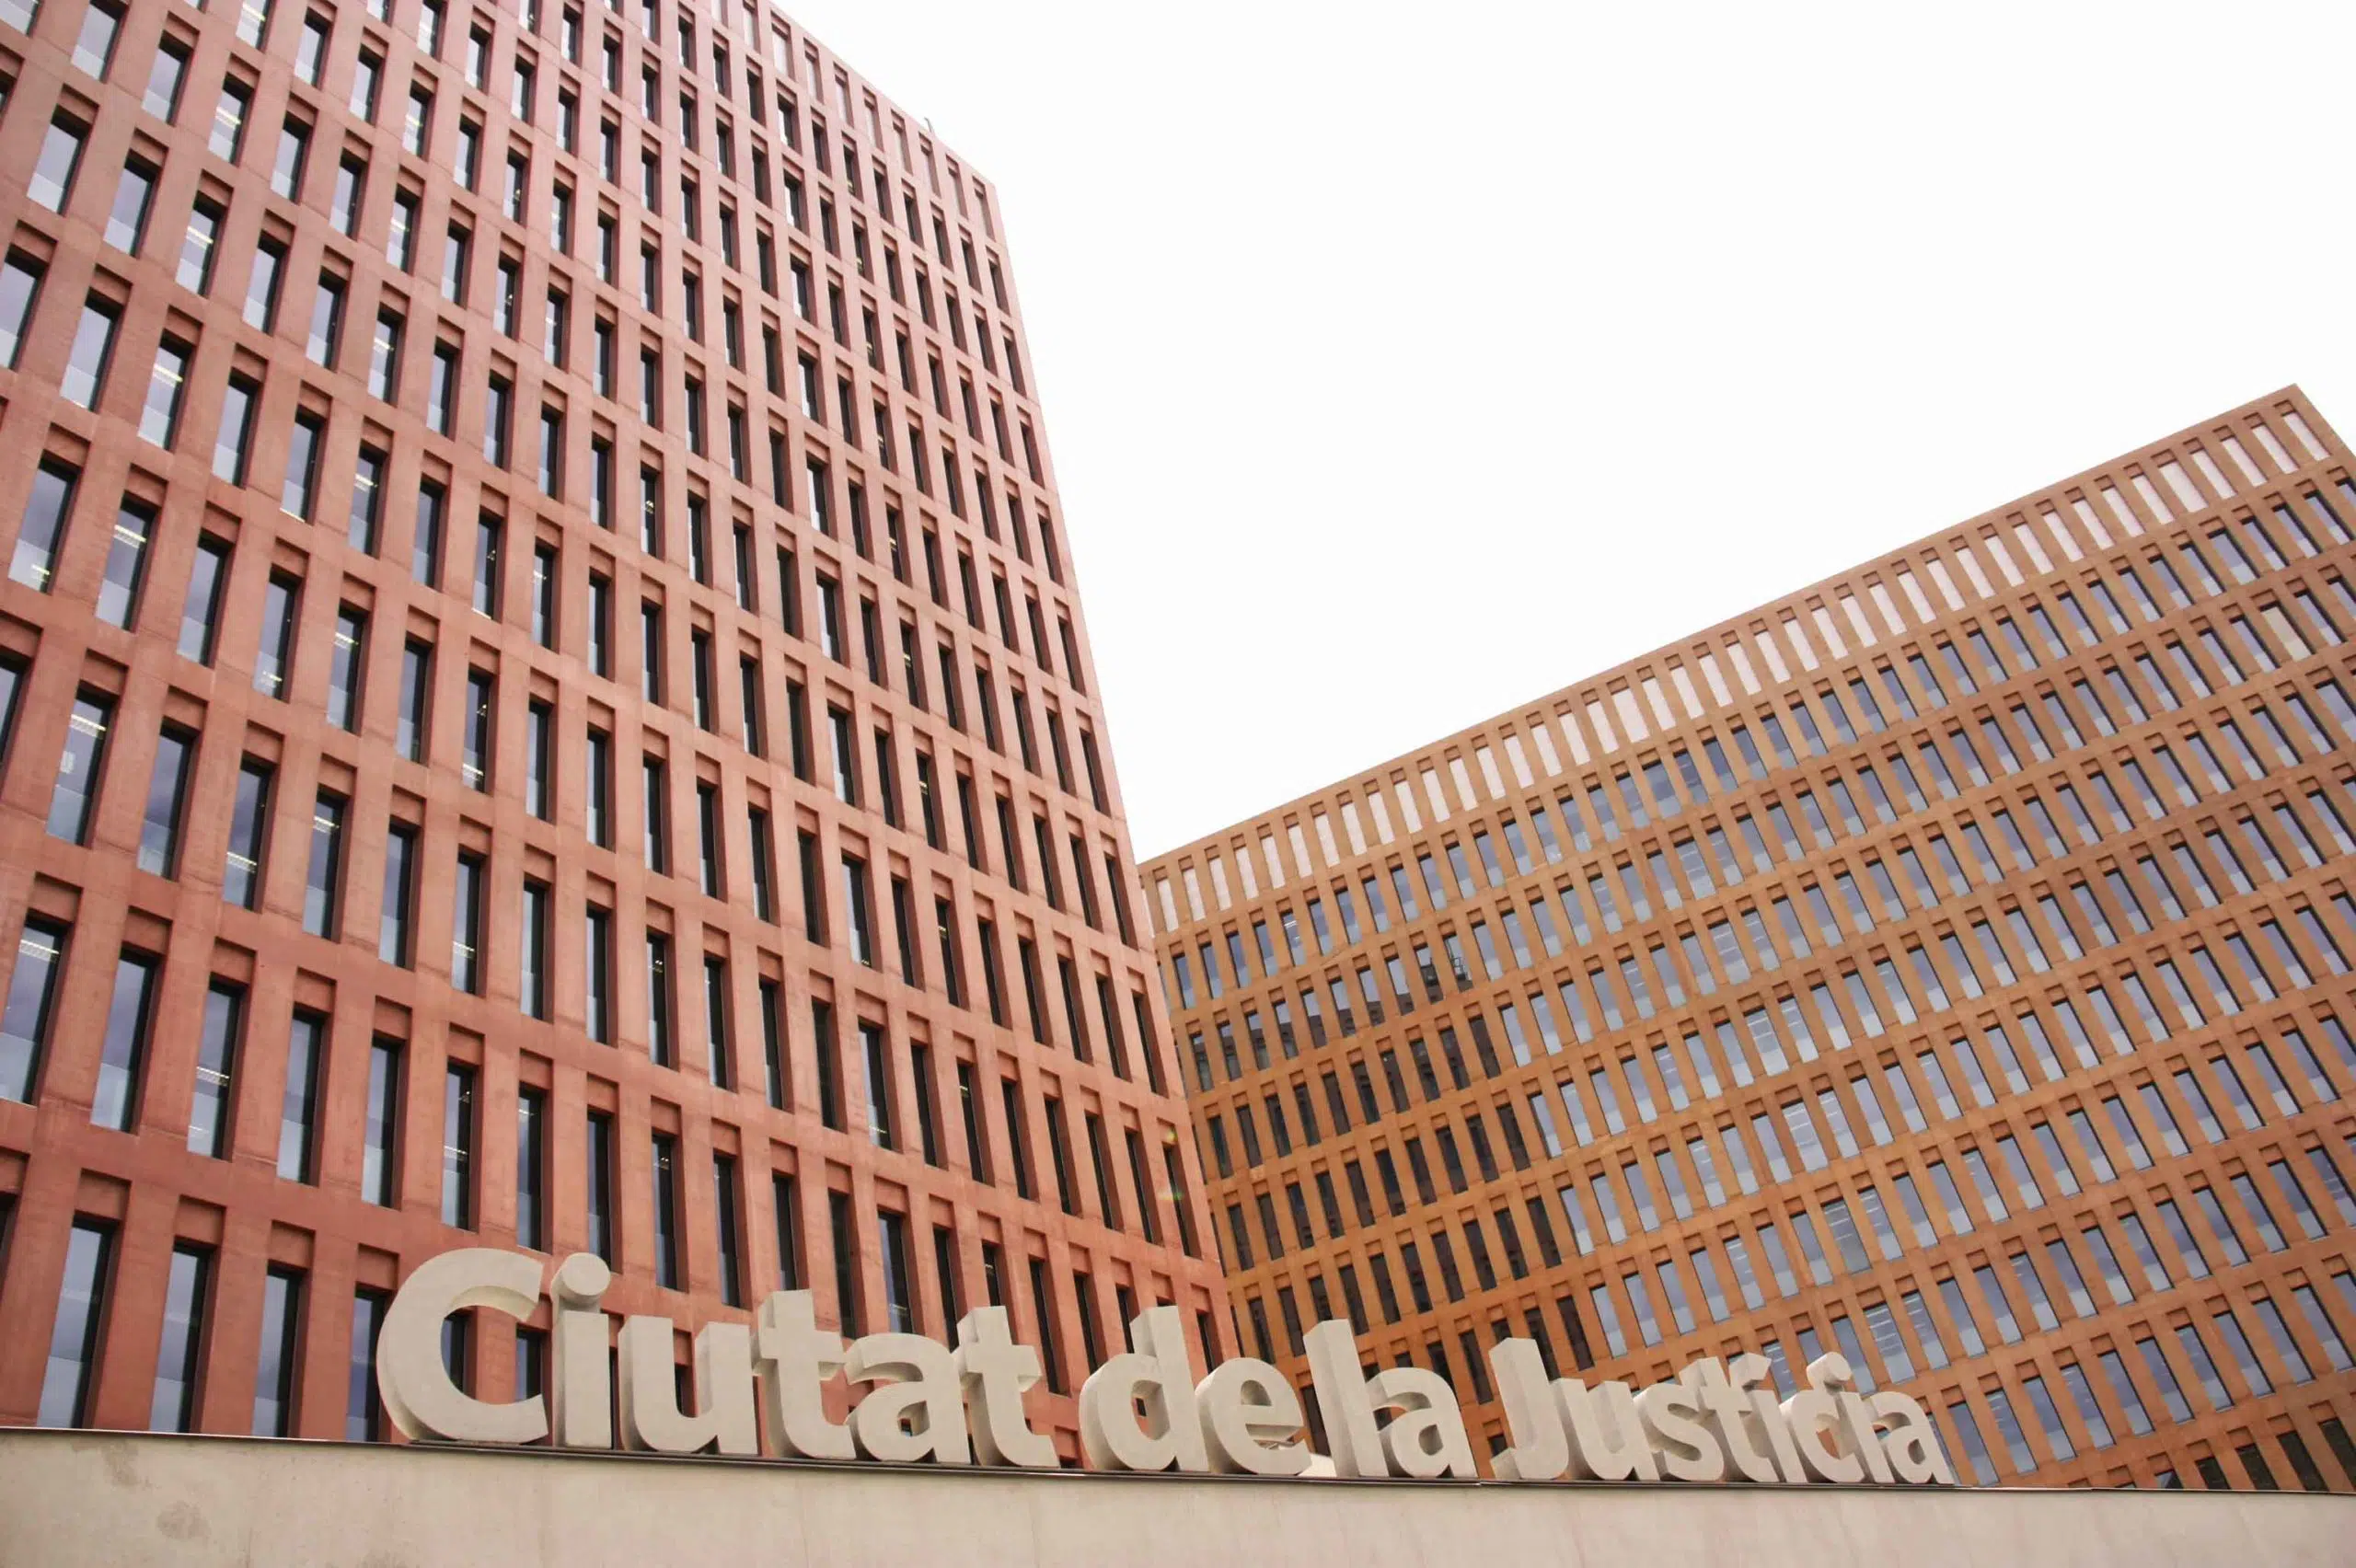 Cierran los juzgados de lo penal de la Ciudad de la Justicia de Barcelona tras dos casos de coronavirus